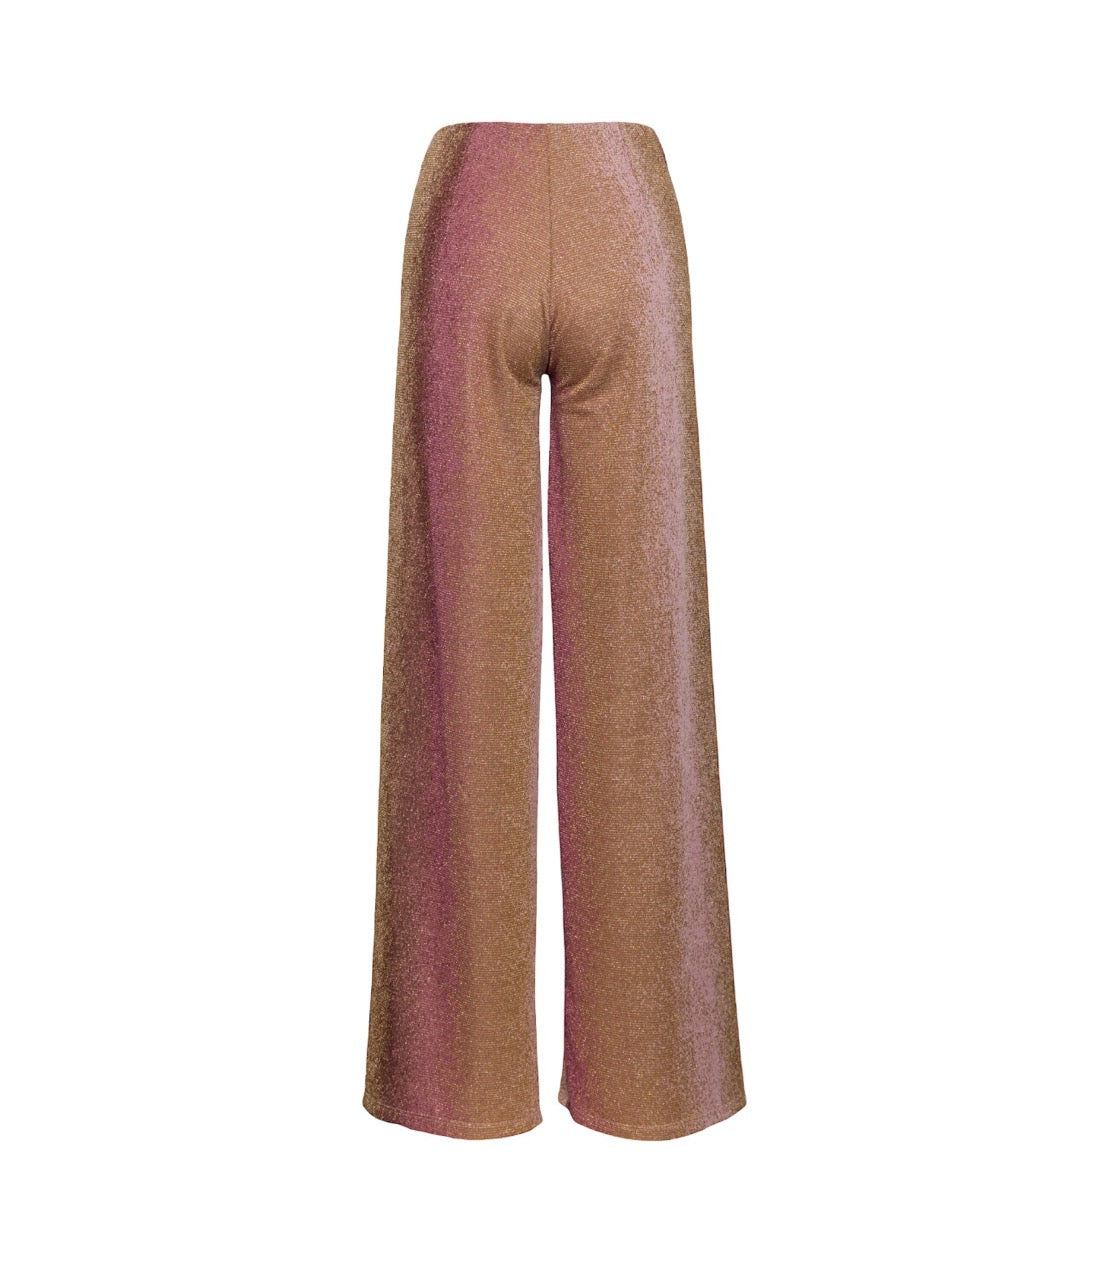 Saiph pink glittery pants